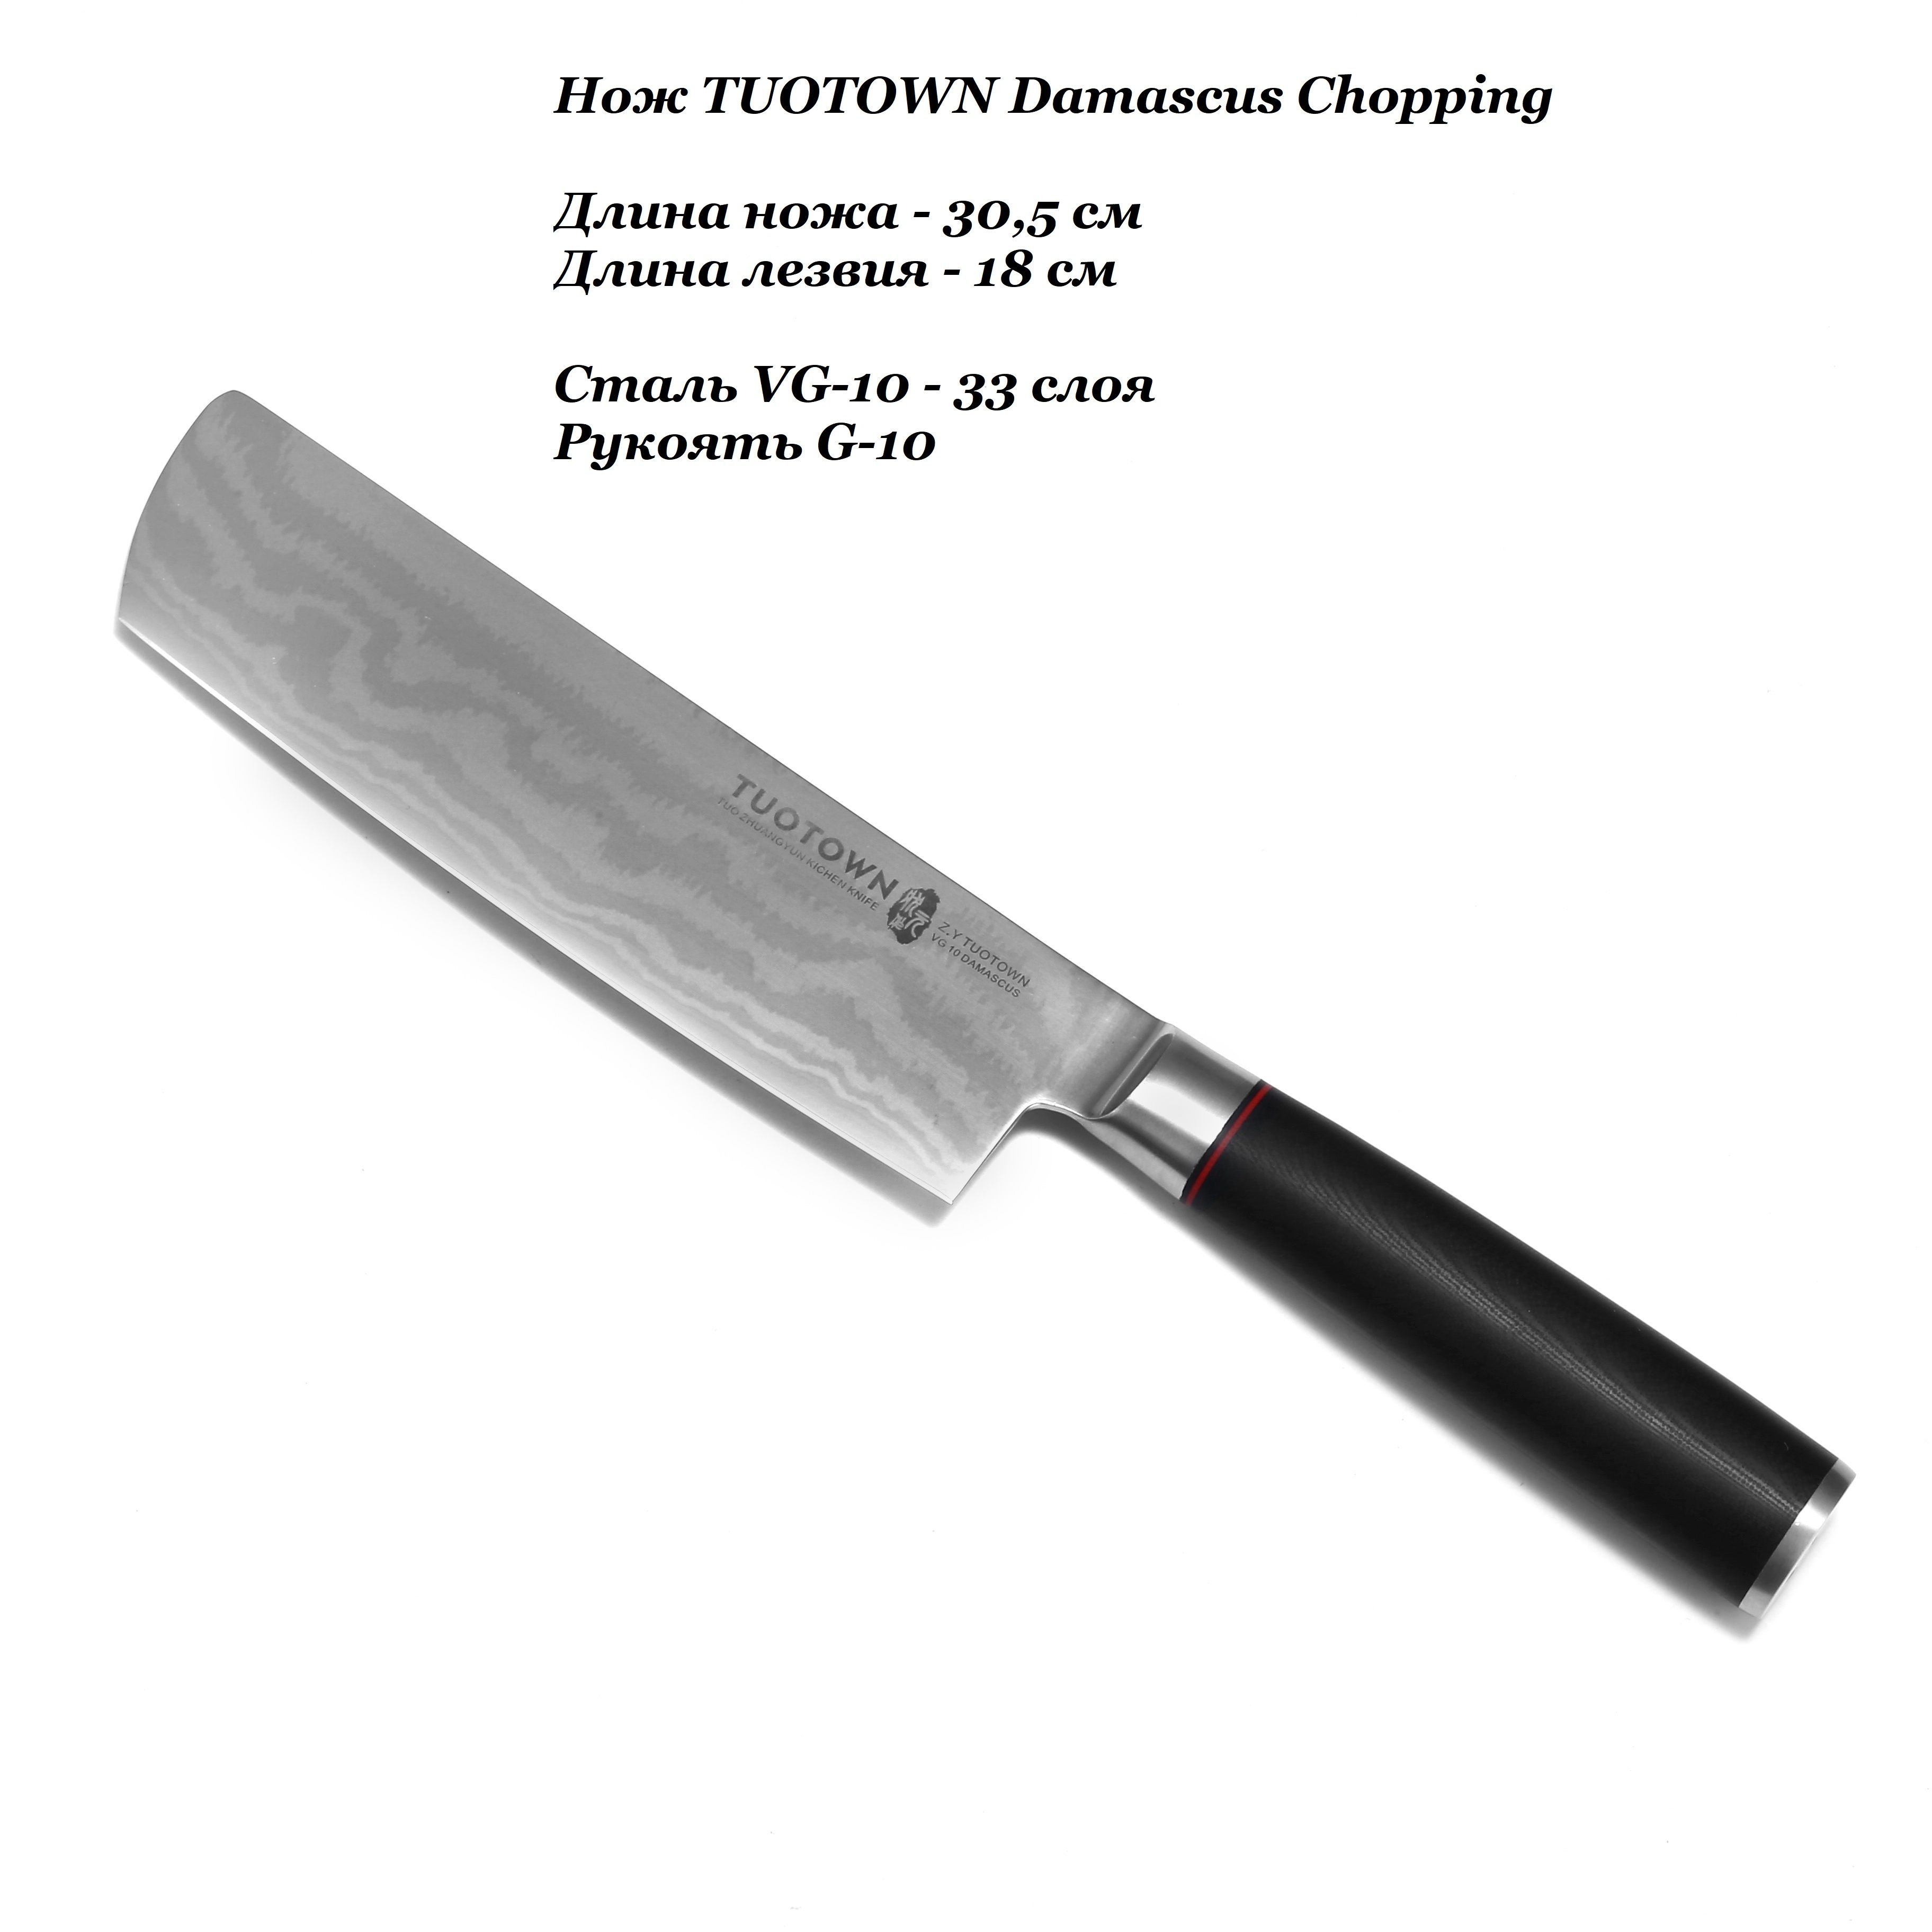 Кухонные ножи tuotown. Цай Дао нож. TUOTOWN ножи. Шинковочный нож. Шинковочный нож длинный.